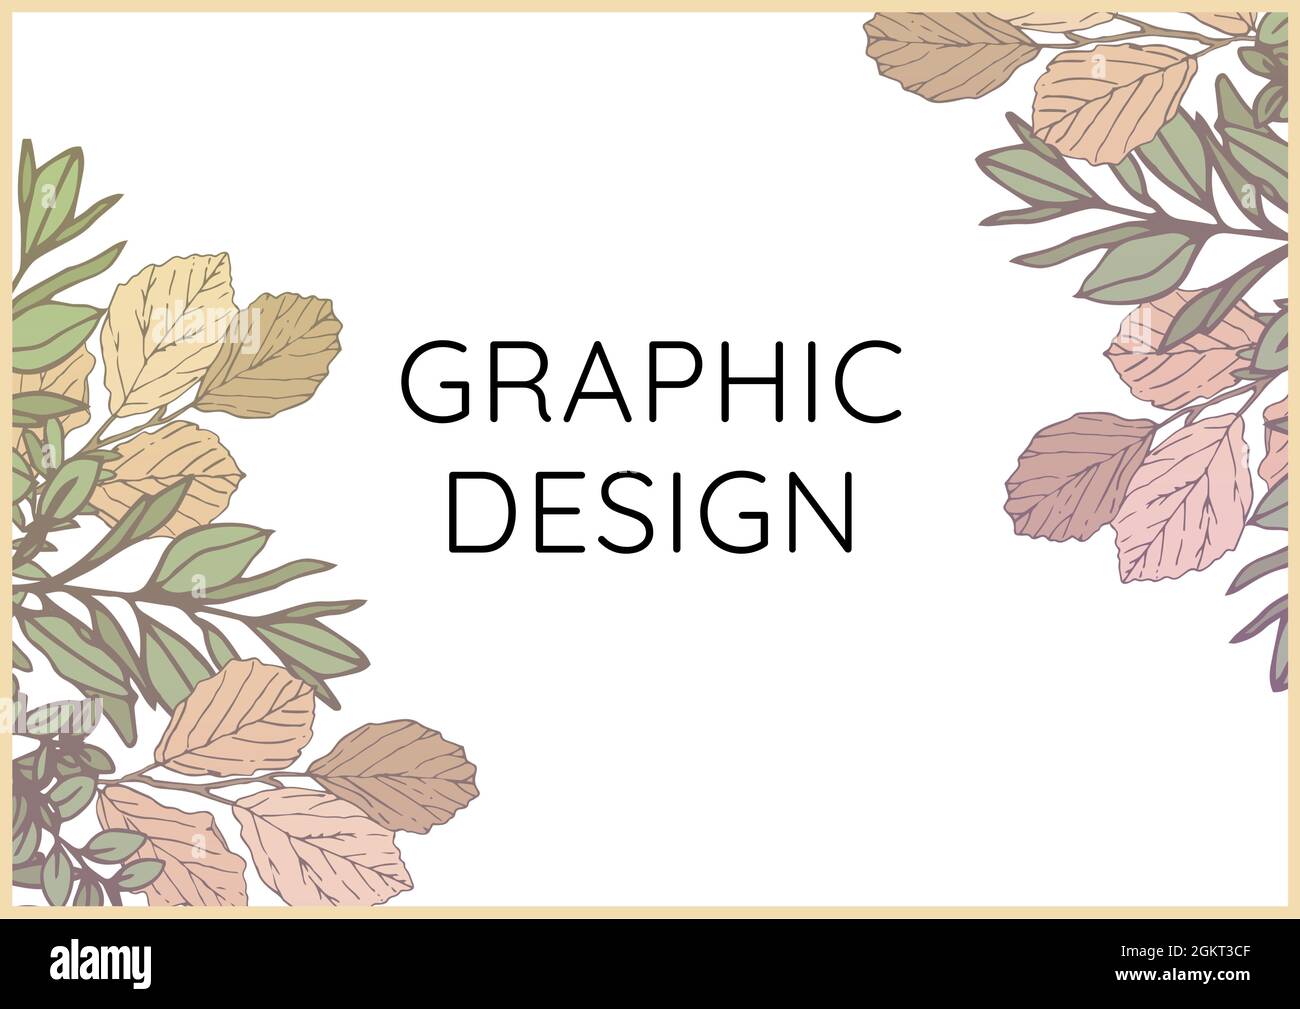 Immagine generata digitalmente del testo di disegno grafico contro i disegni floreali su sfondo bianco Foto Stock